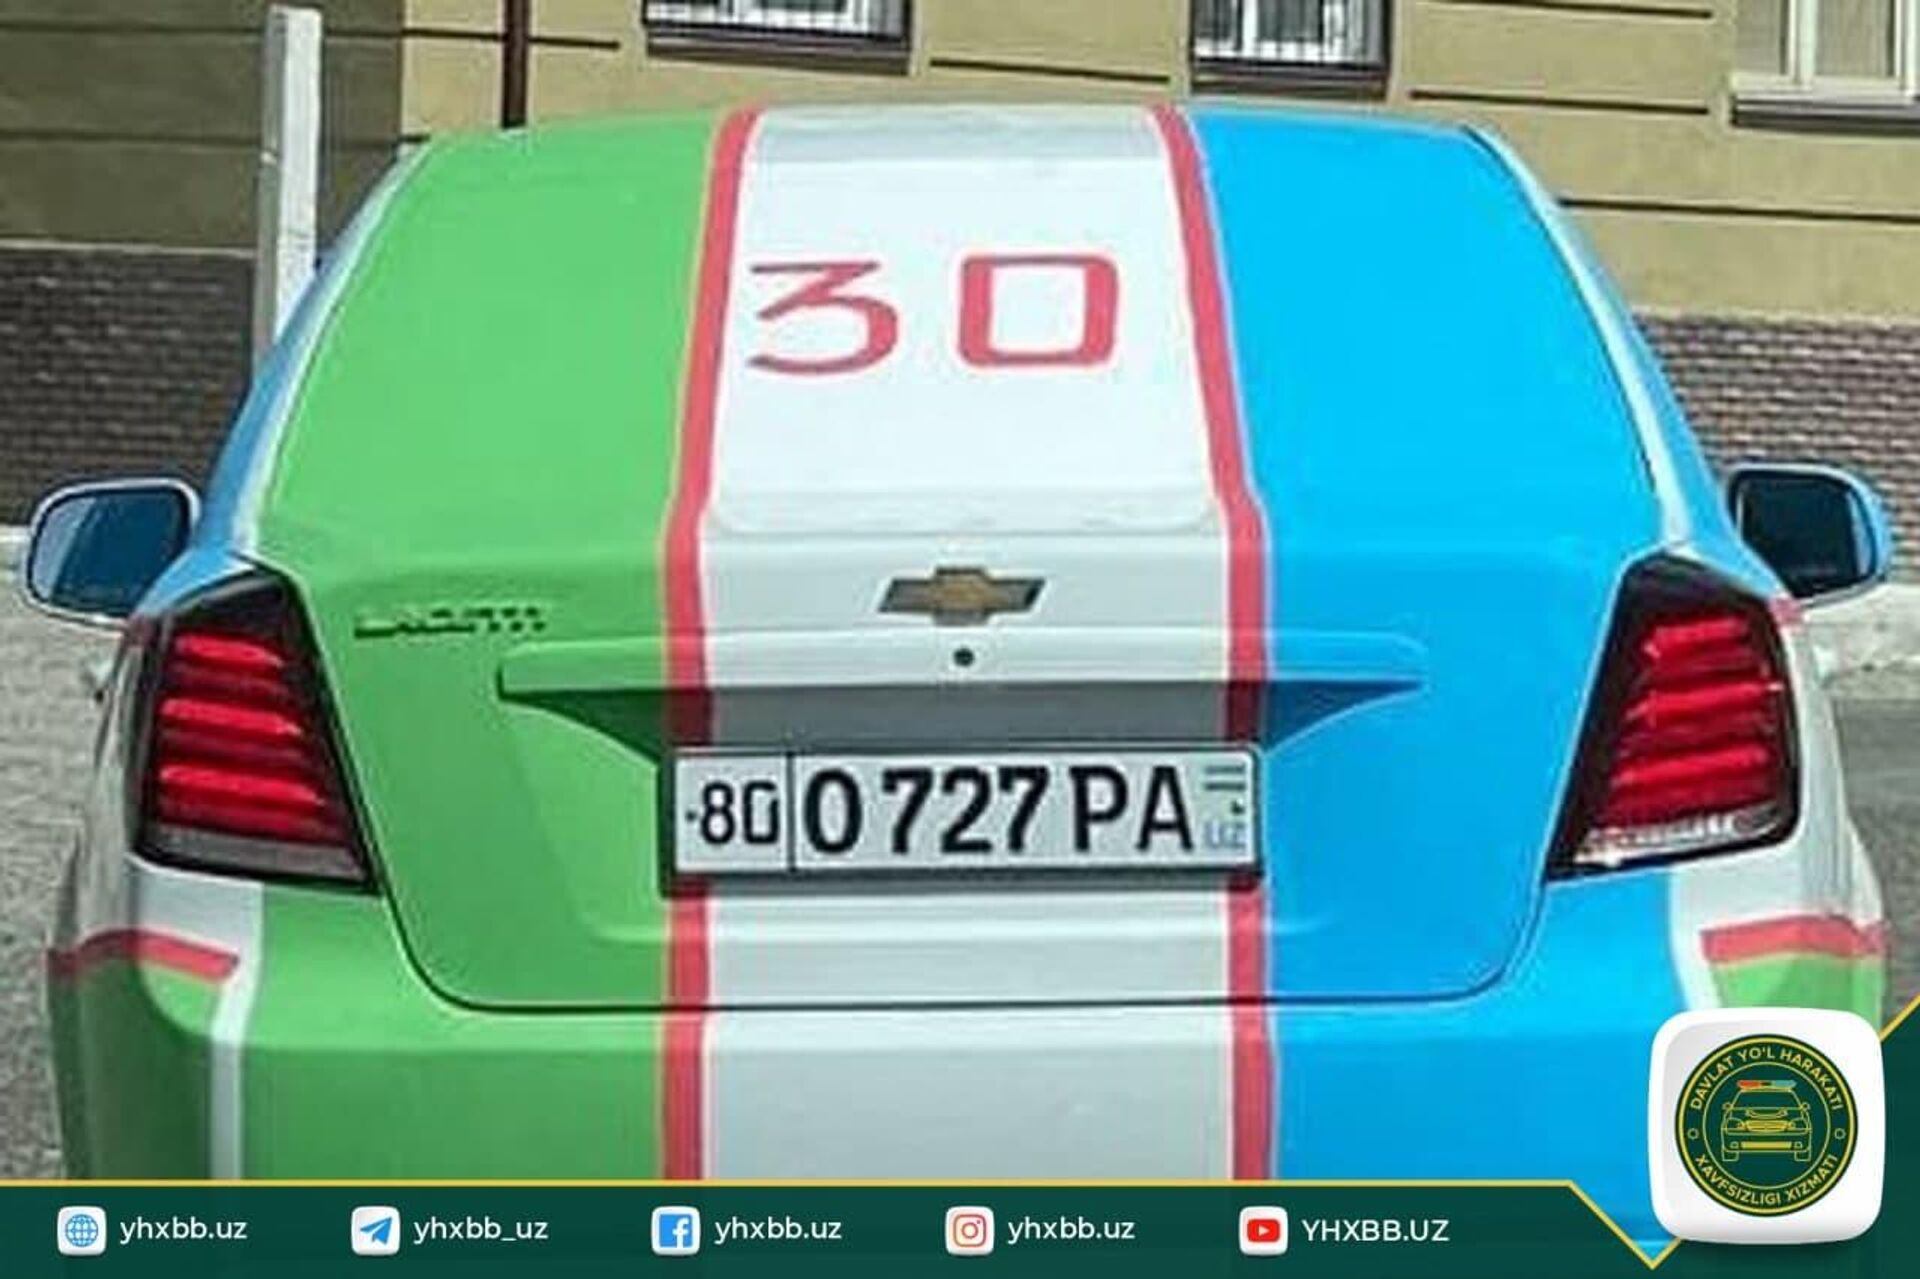 В Бухаре водители разрисовали авто в цвета государственного флага - Sputnik Узбекистан, 1920, 01.09.2021